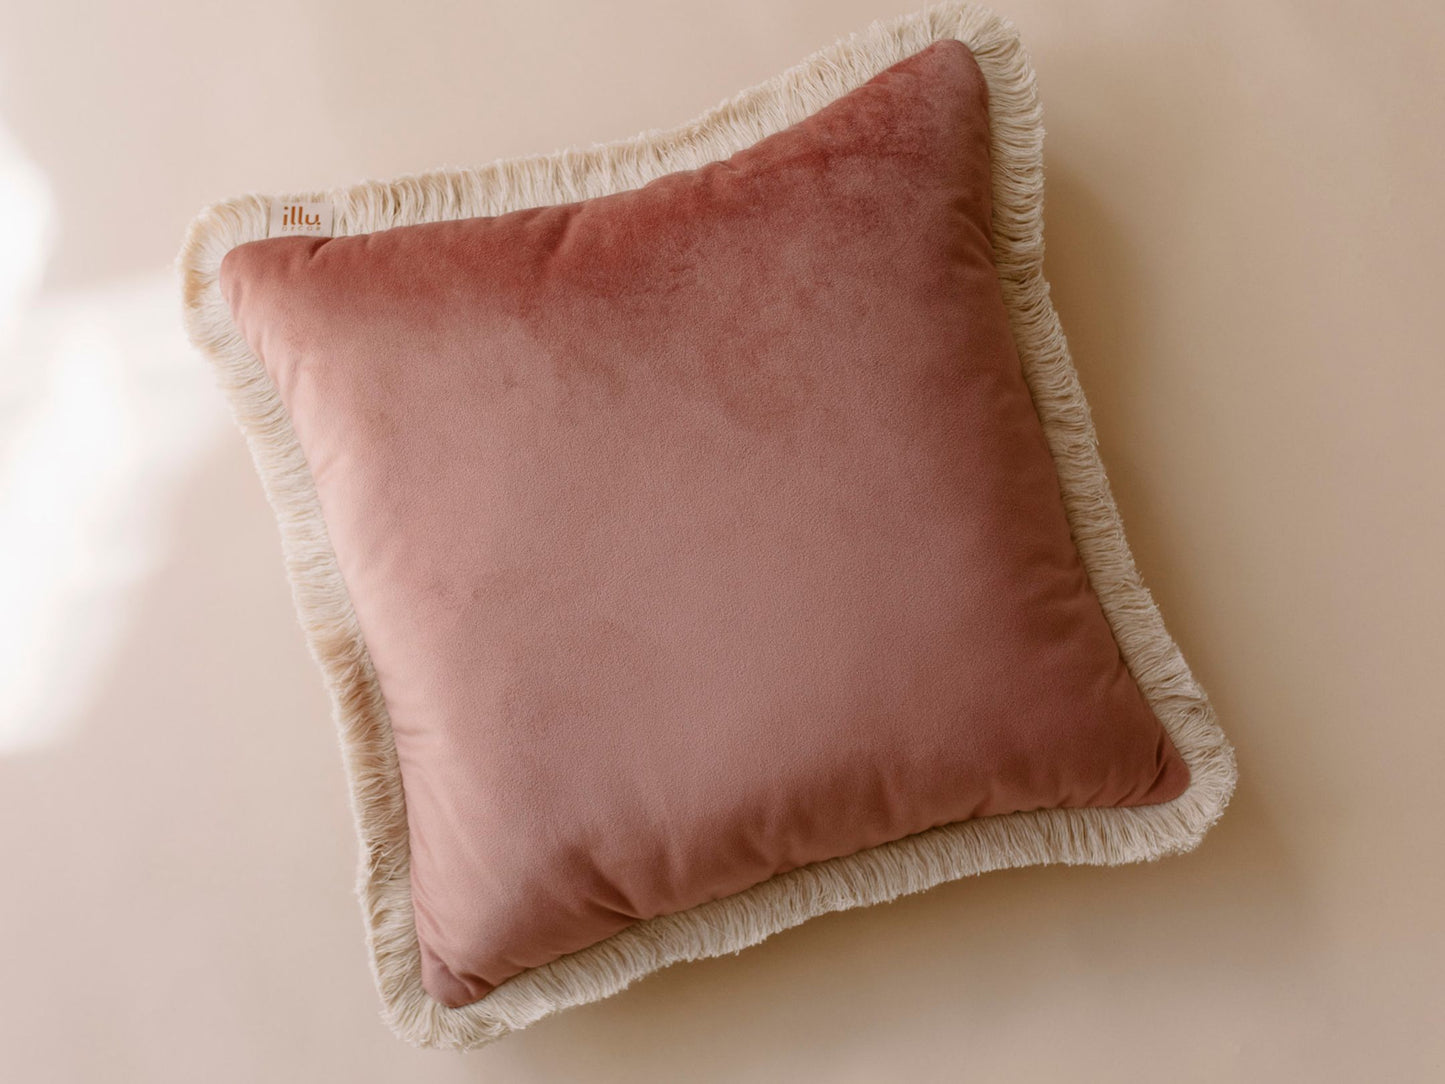 Coussin décoratif en velours rose poudré, coussin carré décoratif avec frange en coton.